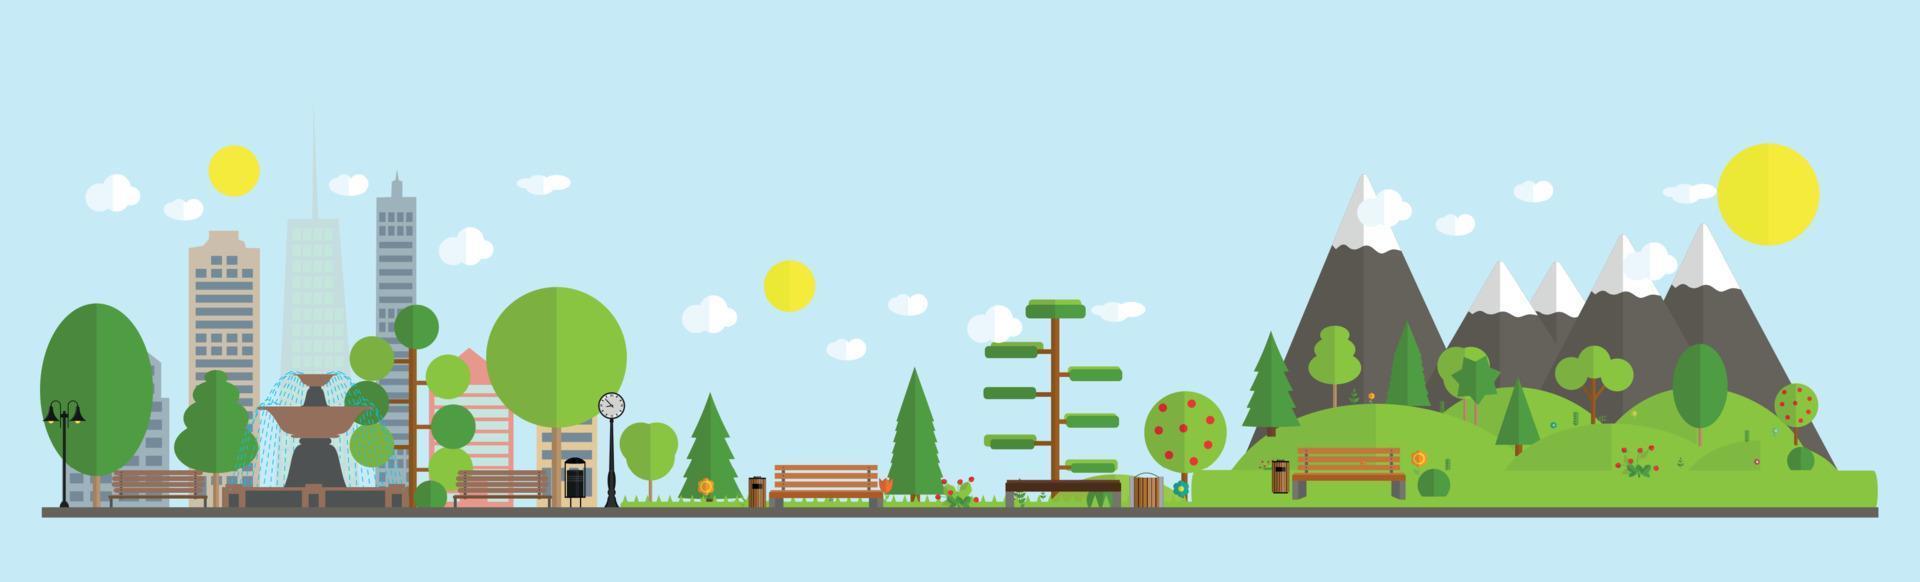 platte cartoon stijl illustratie van stedelijk landschap straat skyline stad kantoorgebouwen en parken met bomen. vector illustratie